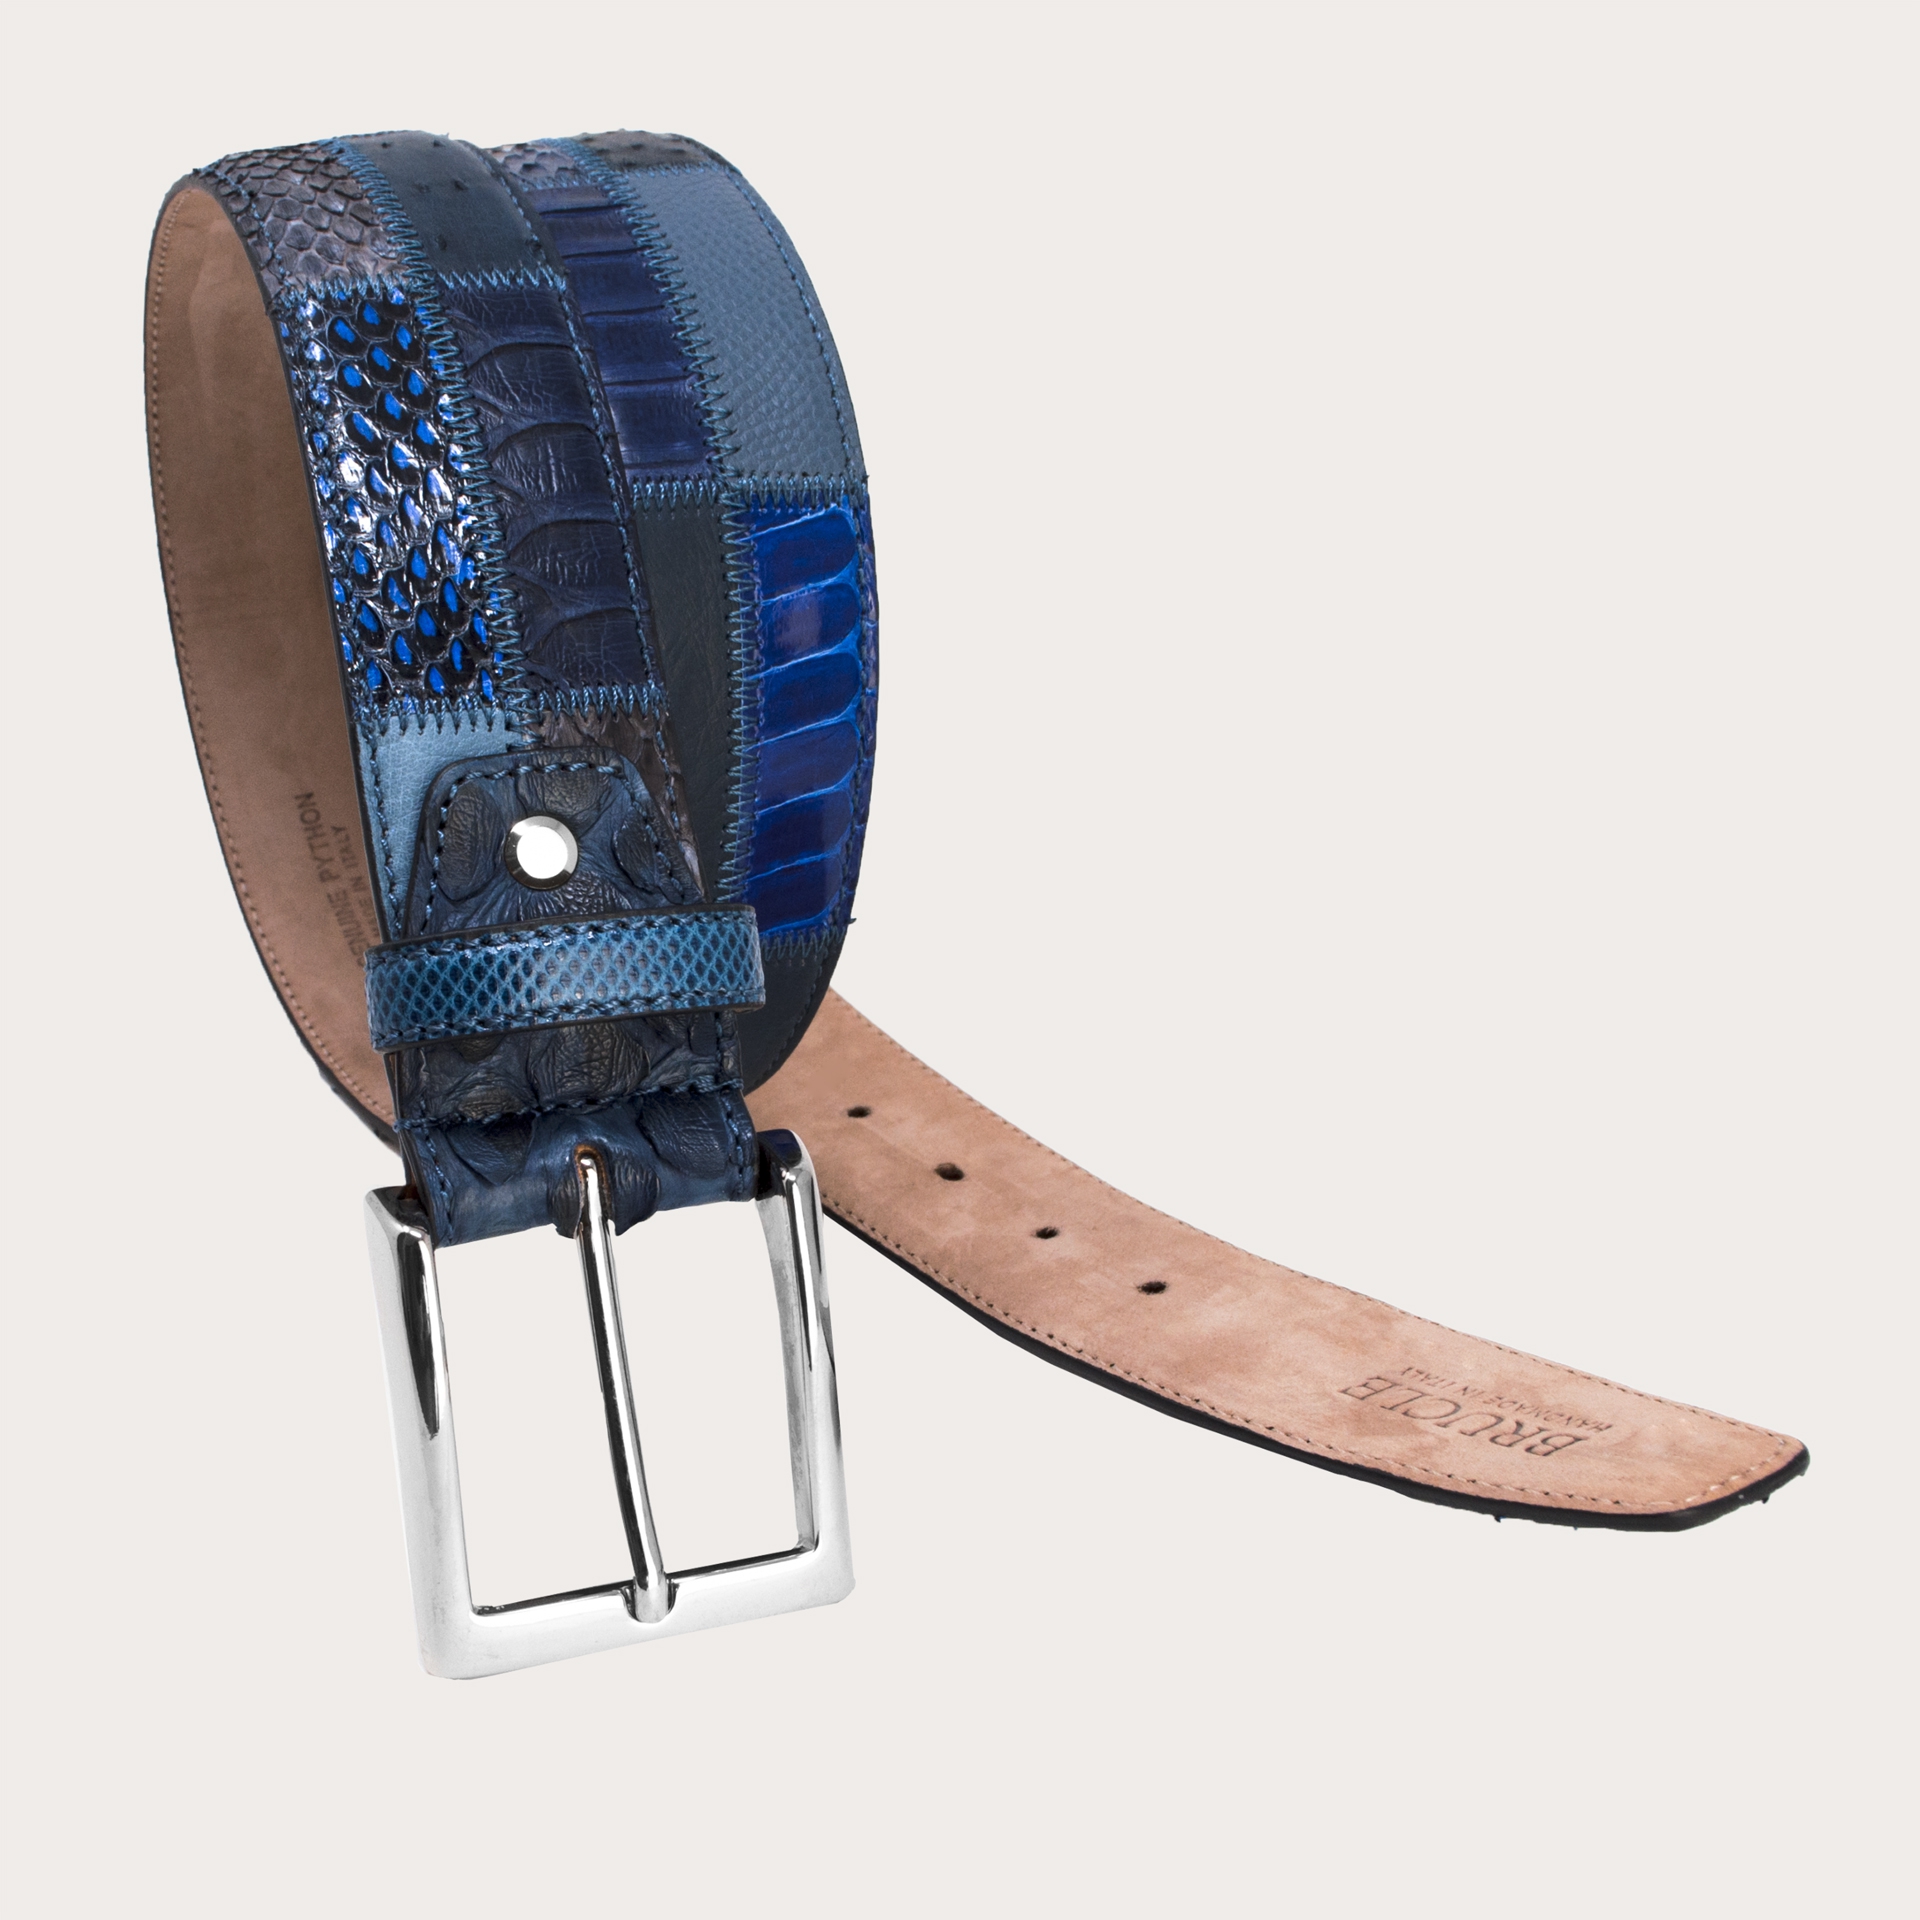 Cintura in vero pitone realizzata a mano in Italia con lavorazione patchwork. Un pezzo unico che non passa inosservato.